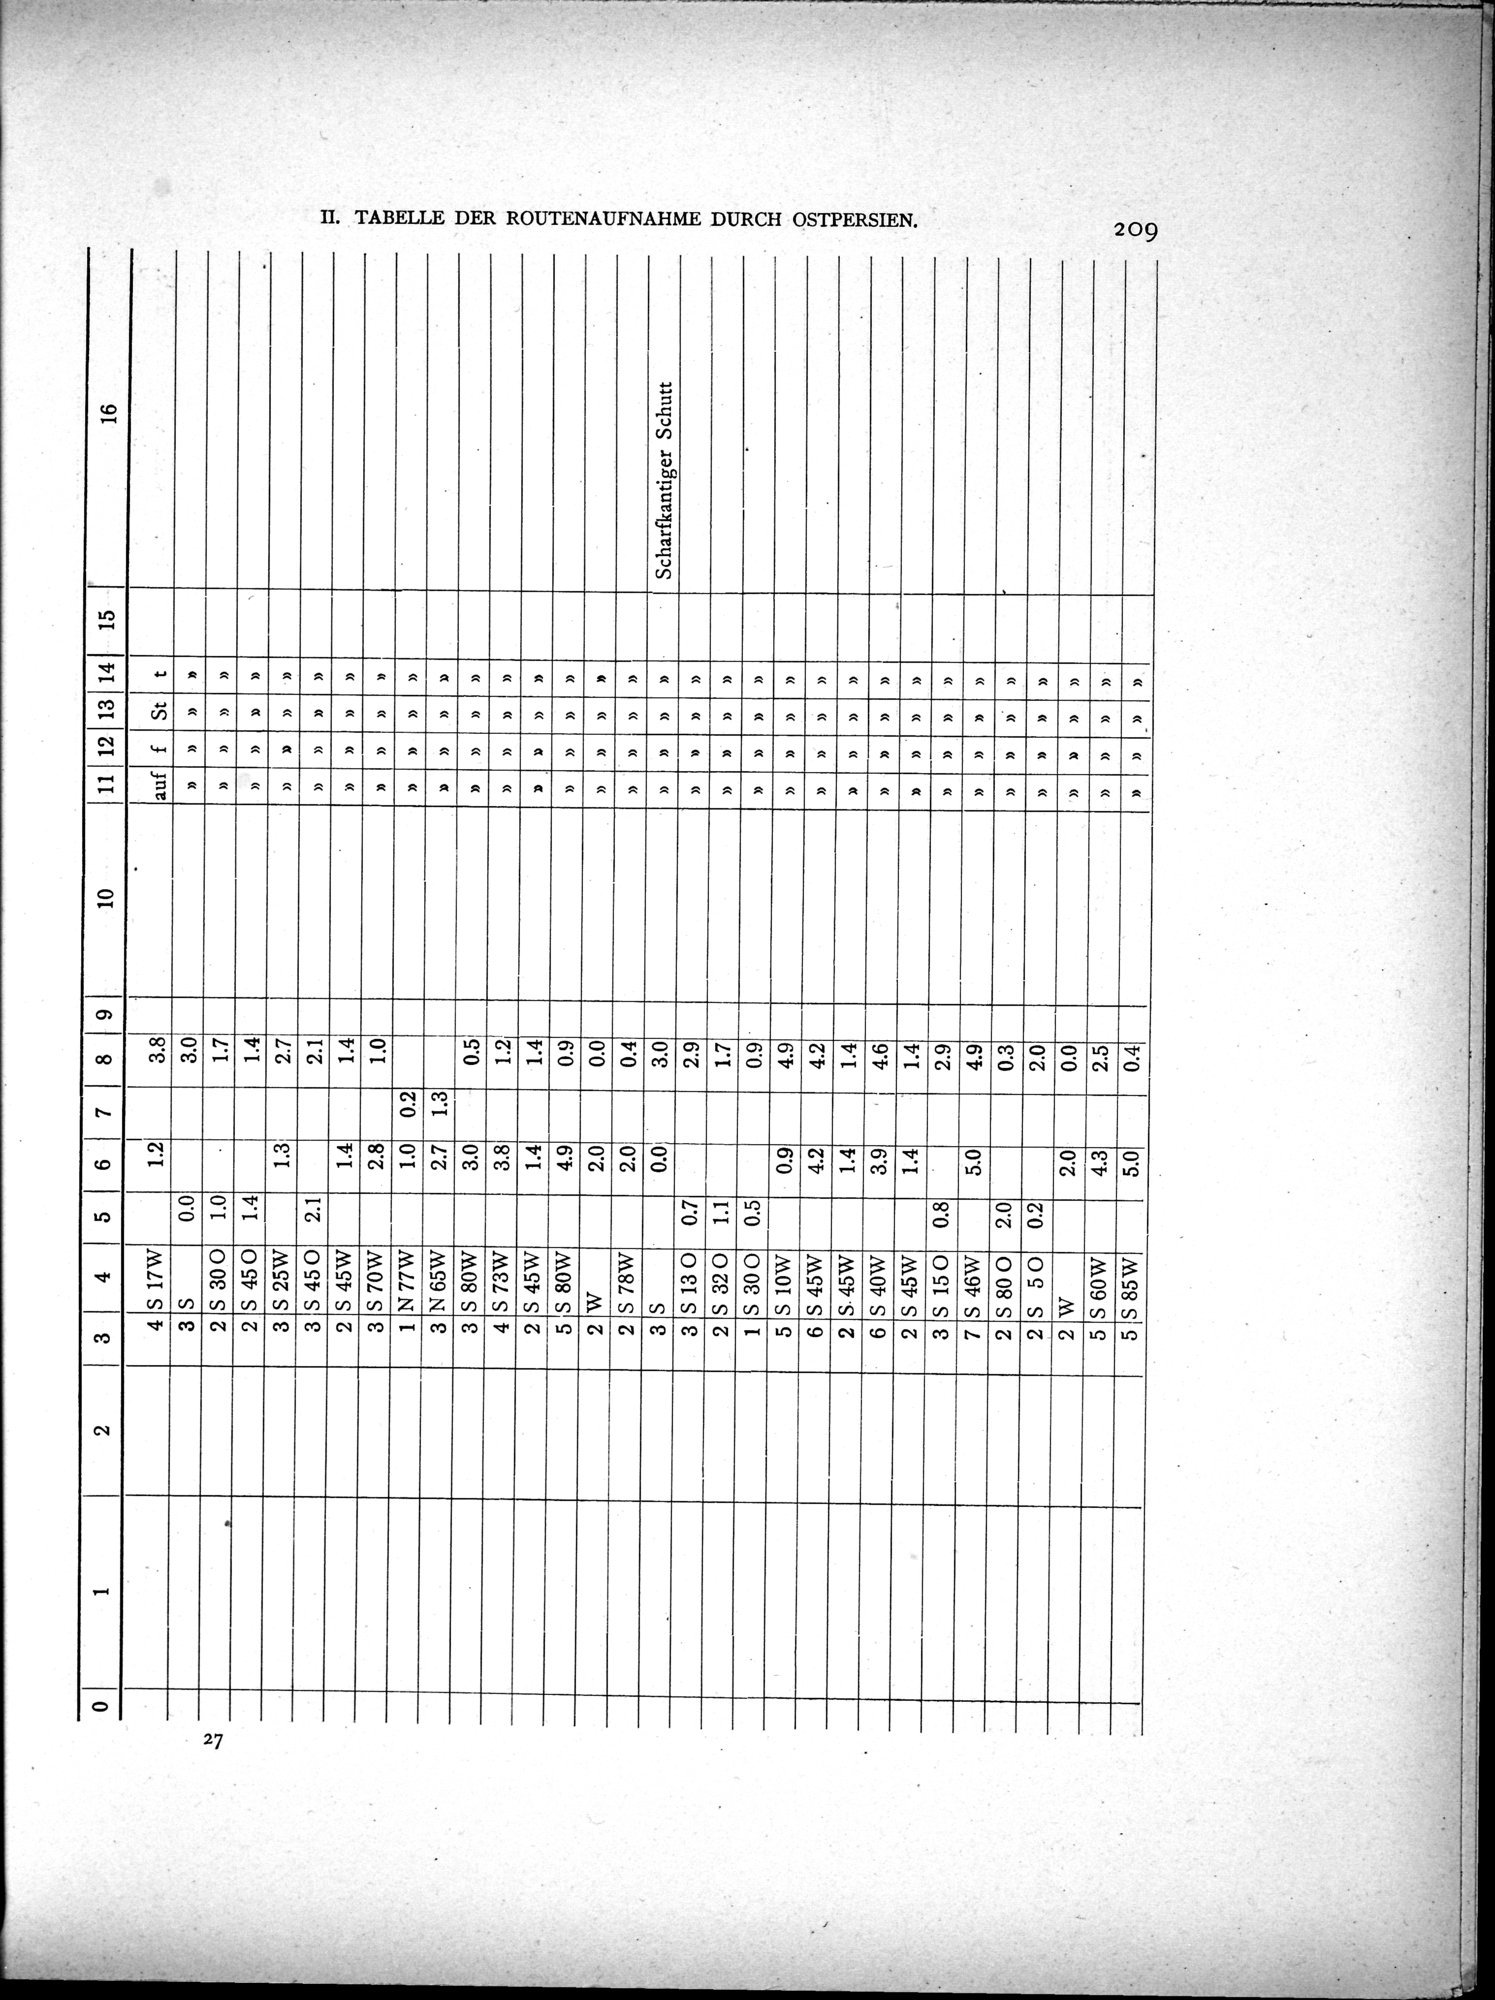 Eine Routenaufnahme durch Ostpersien : vol.2 / Page 279 (Grayscale High Resolution Image)